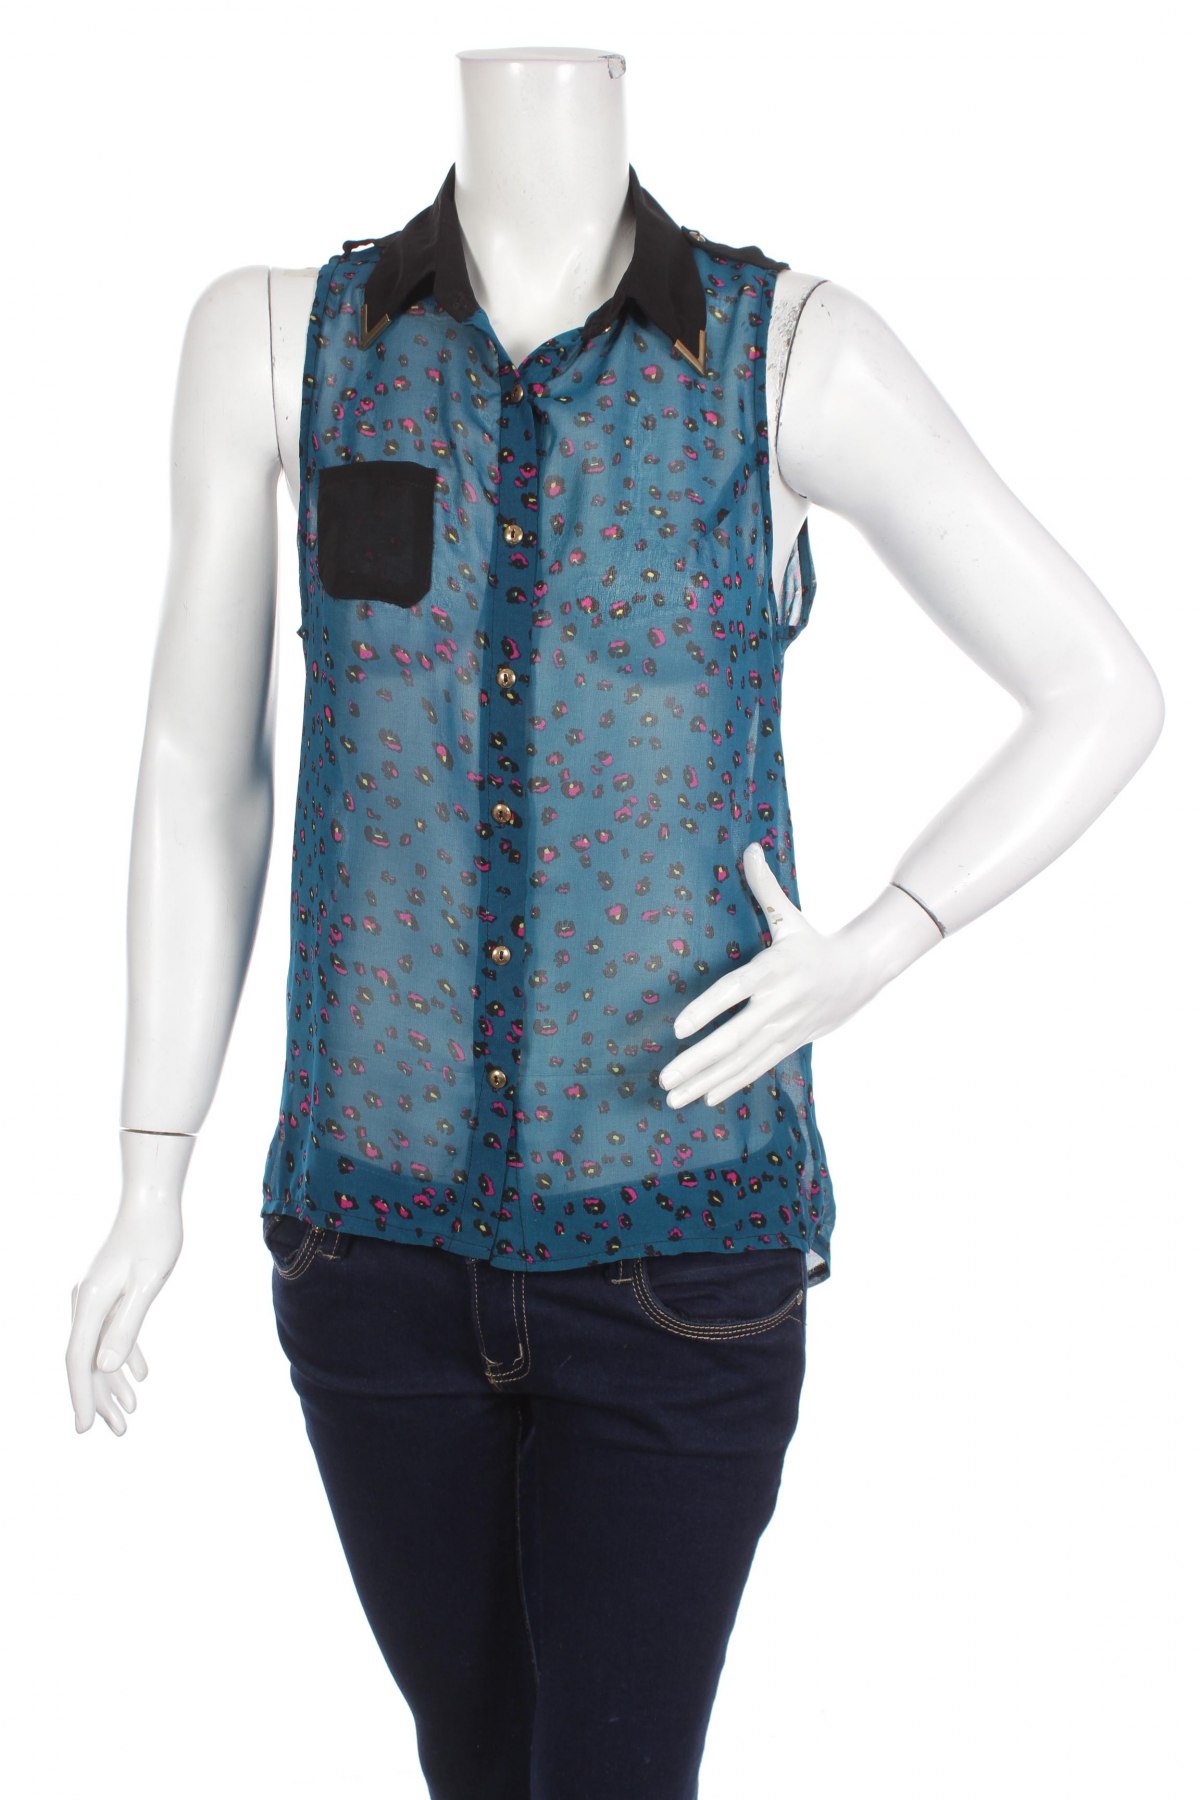 Γυναικείο πουκάμισο Poppy Lux, Μέγεθος M, Χρώμα Πολύχρωμο, Τιμή 9,90 €